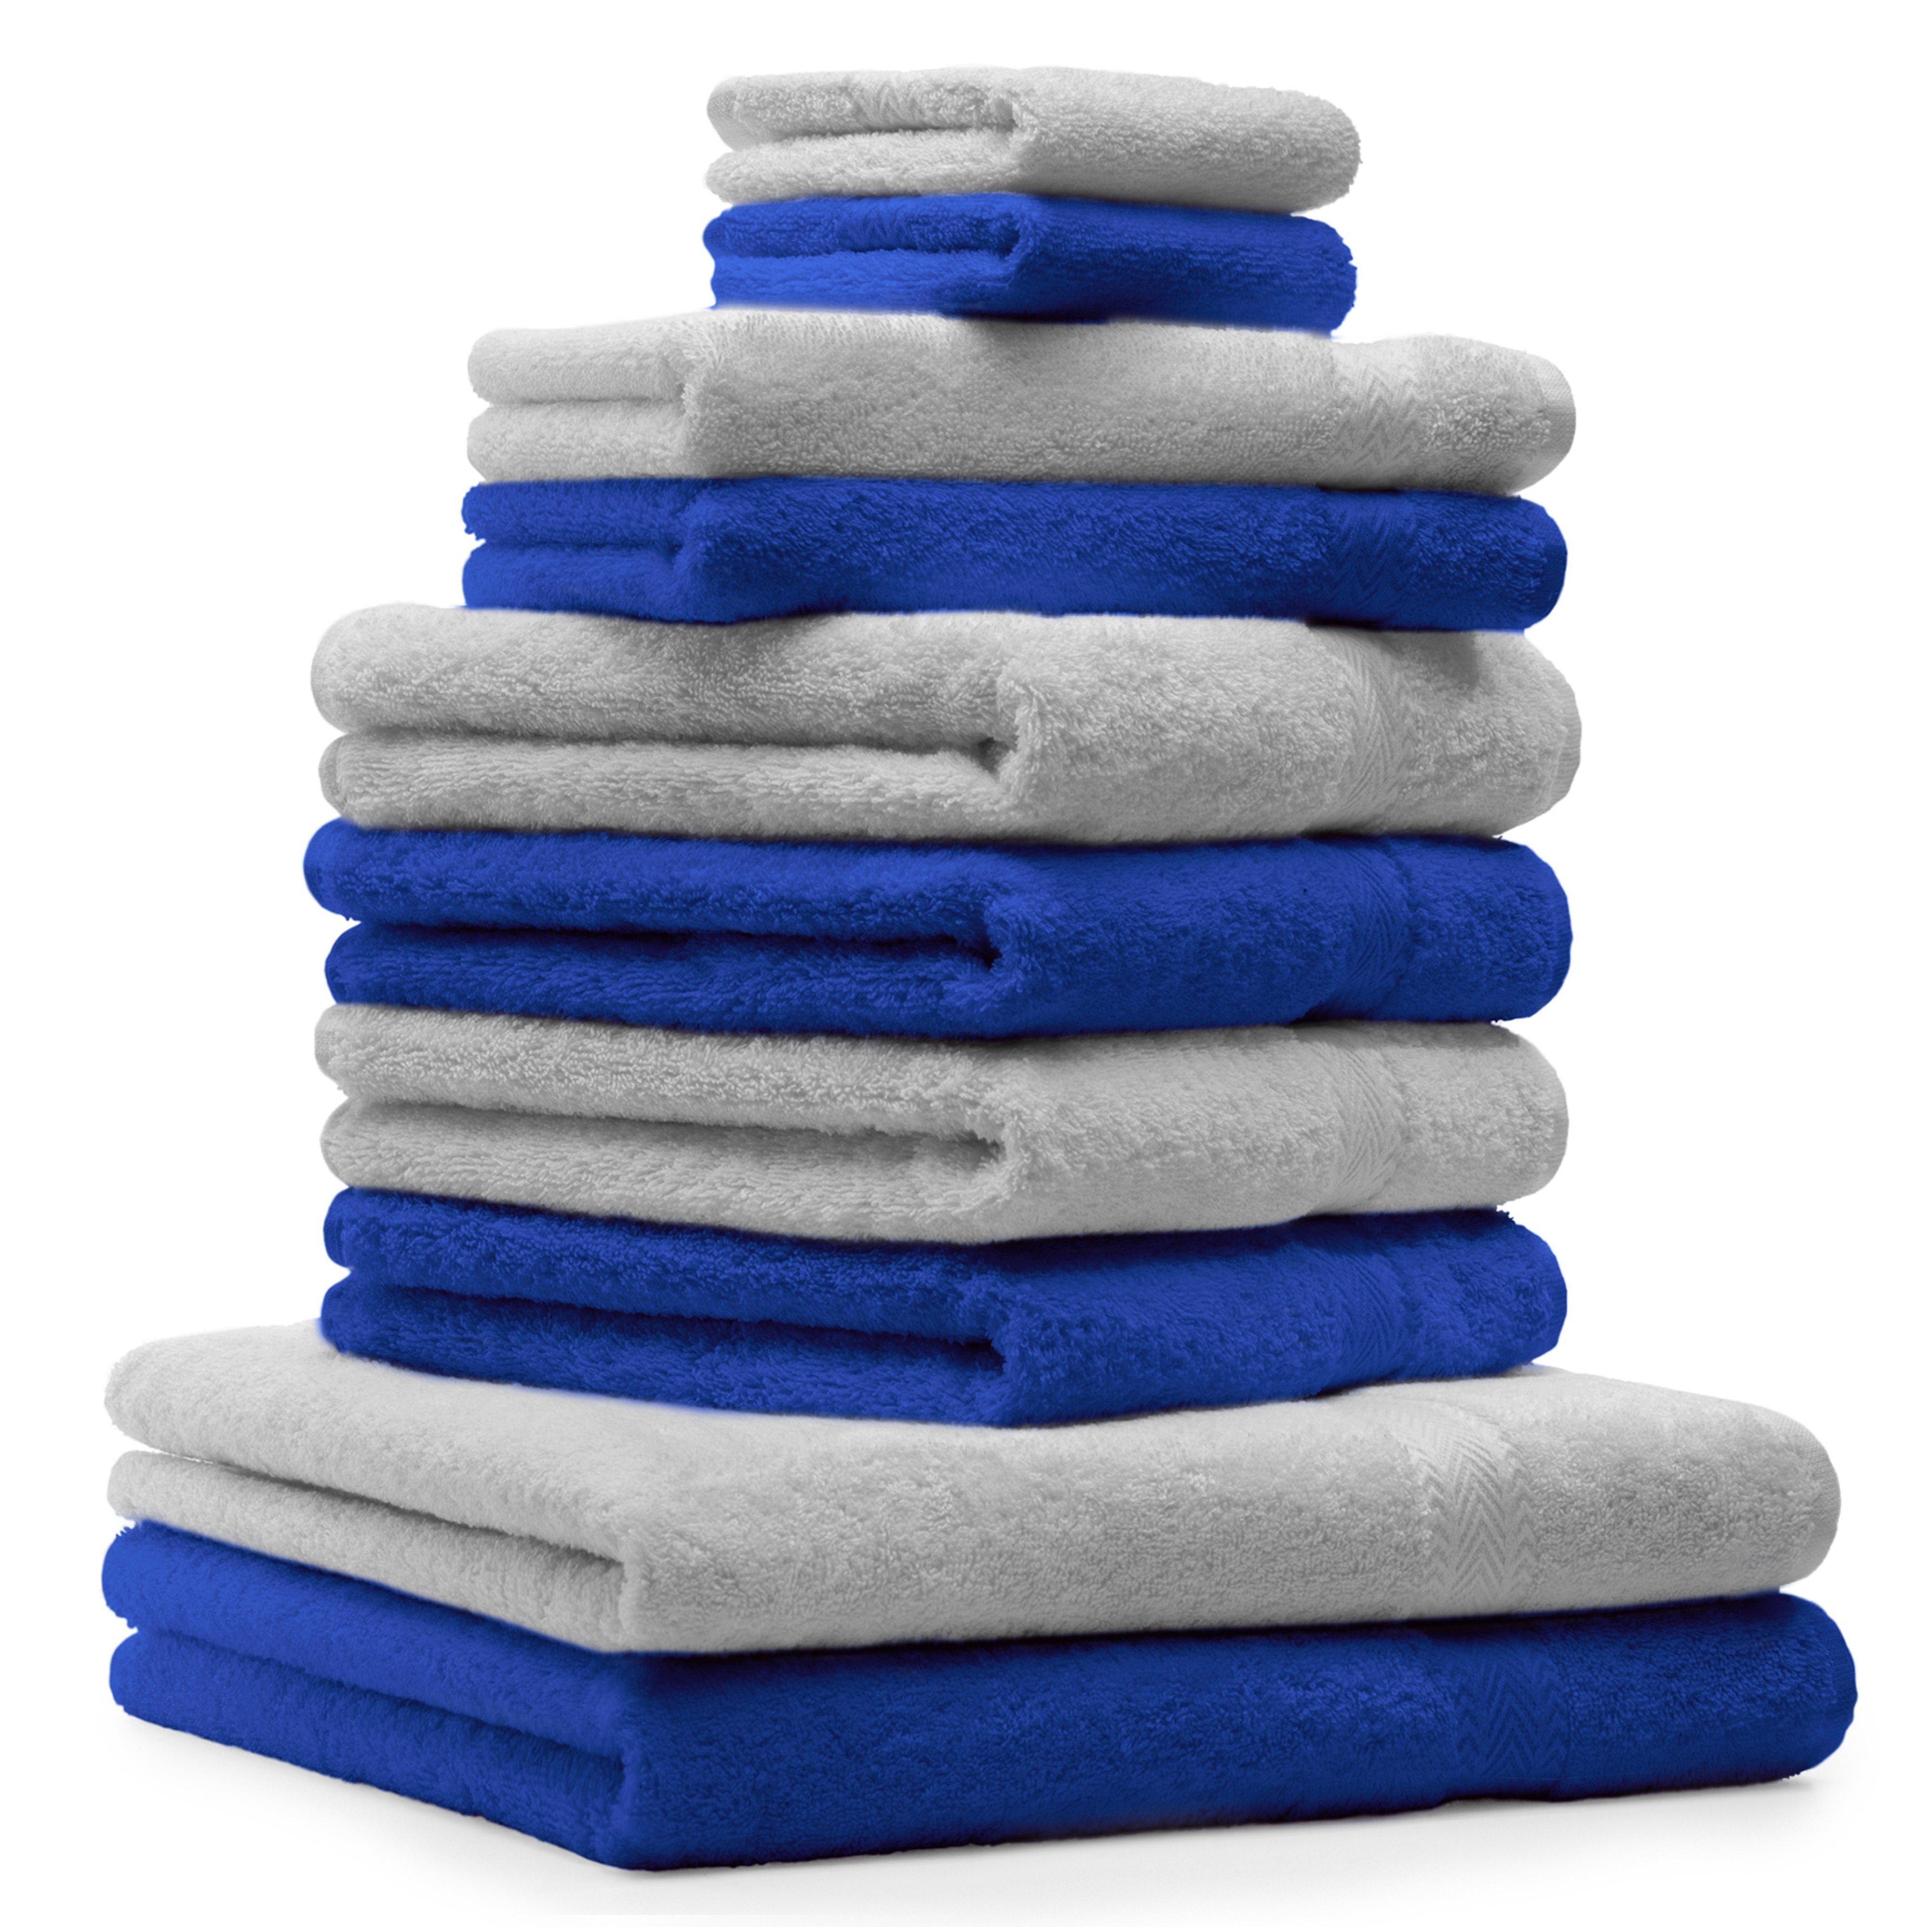 Handtuch Farbe silbergrau, Classic Betz 10-TLG. Handtuch-Set royalblau 100% Set und Baumwolle